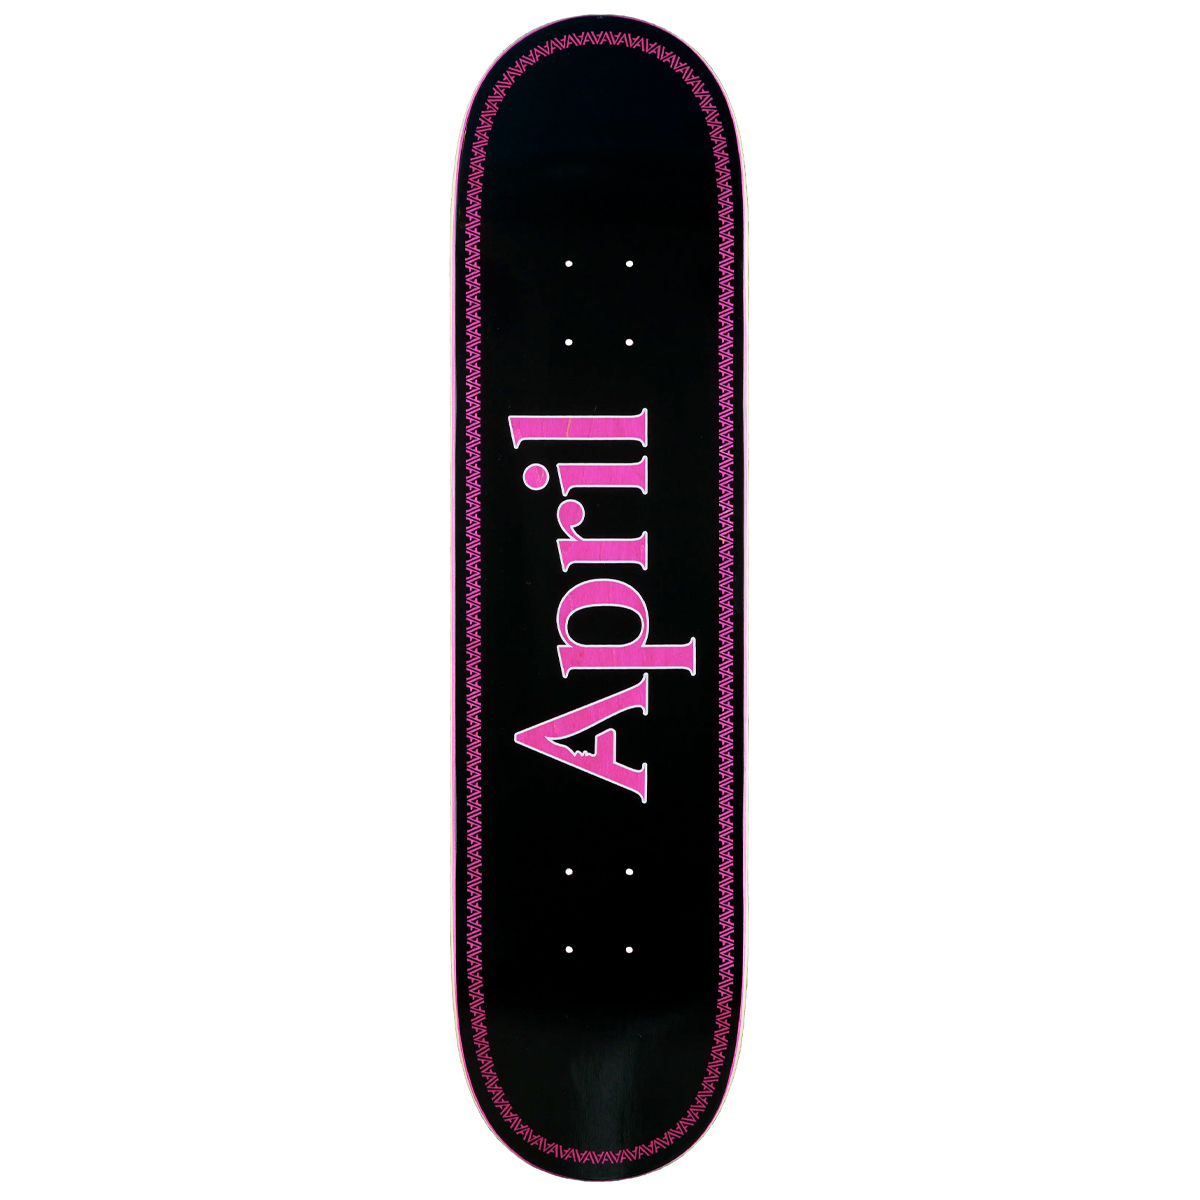 April Skateboard Deck OG Logo 8.5" (pink black helix)